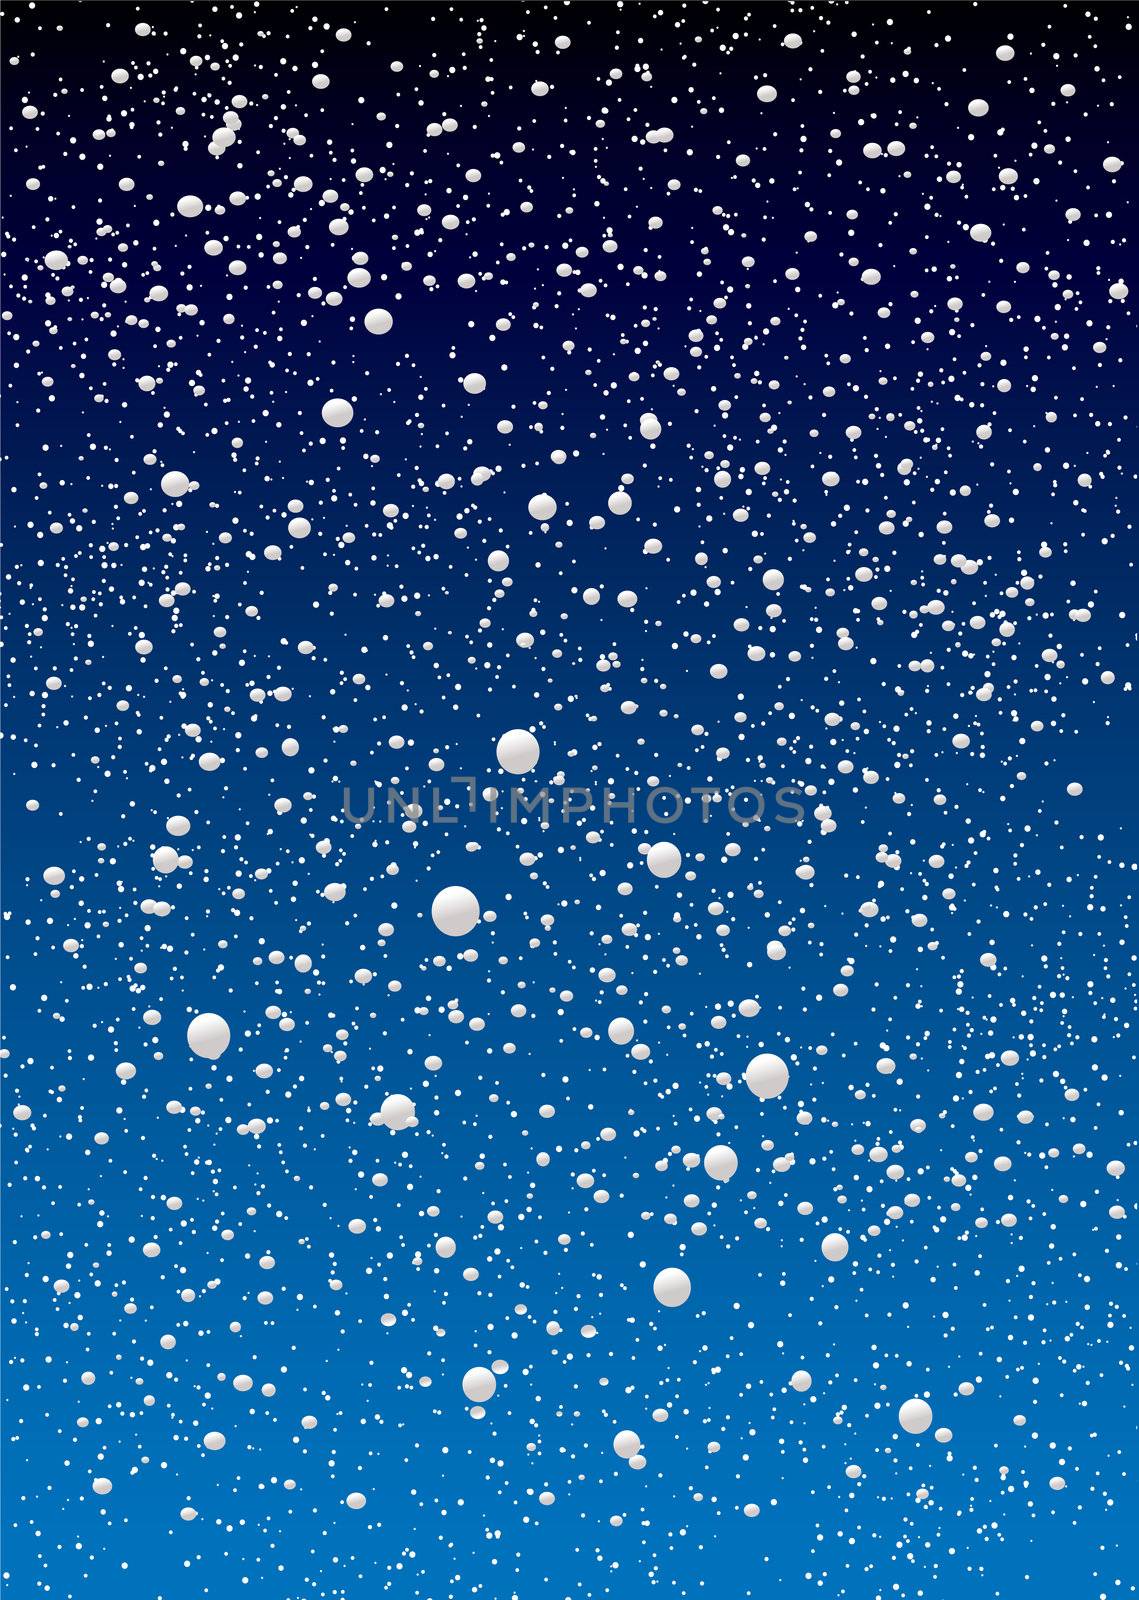 snowflake sky by nicemonkey